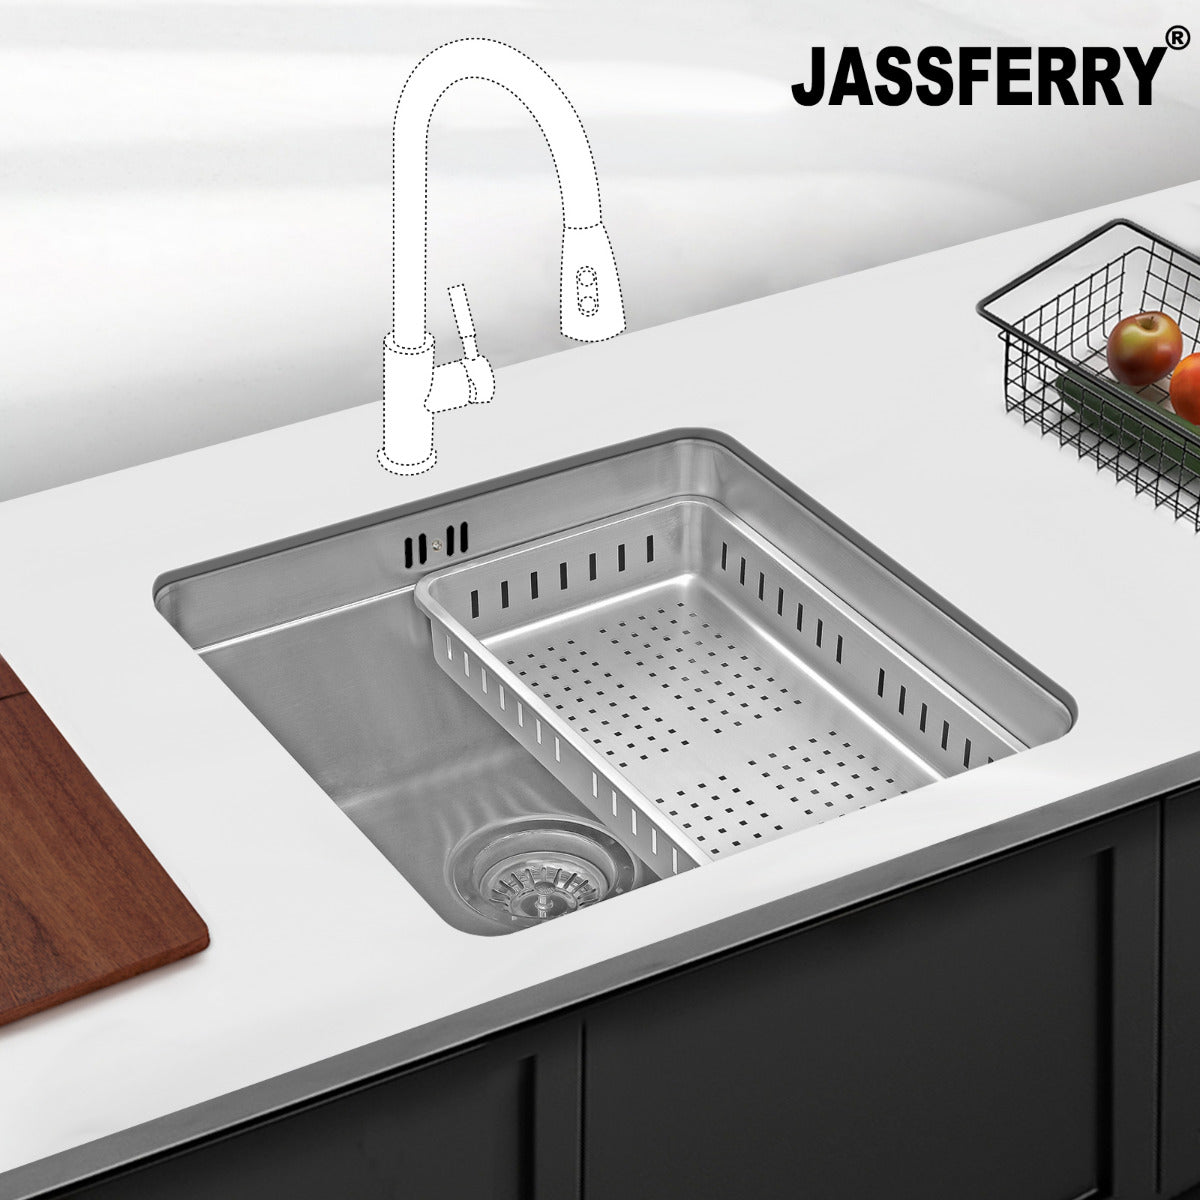 JassferryJASSFERRY Undermount Stainless Steel Kitchen Sink 1 Bowl Dish Drainer RackKitchen Sinks